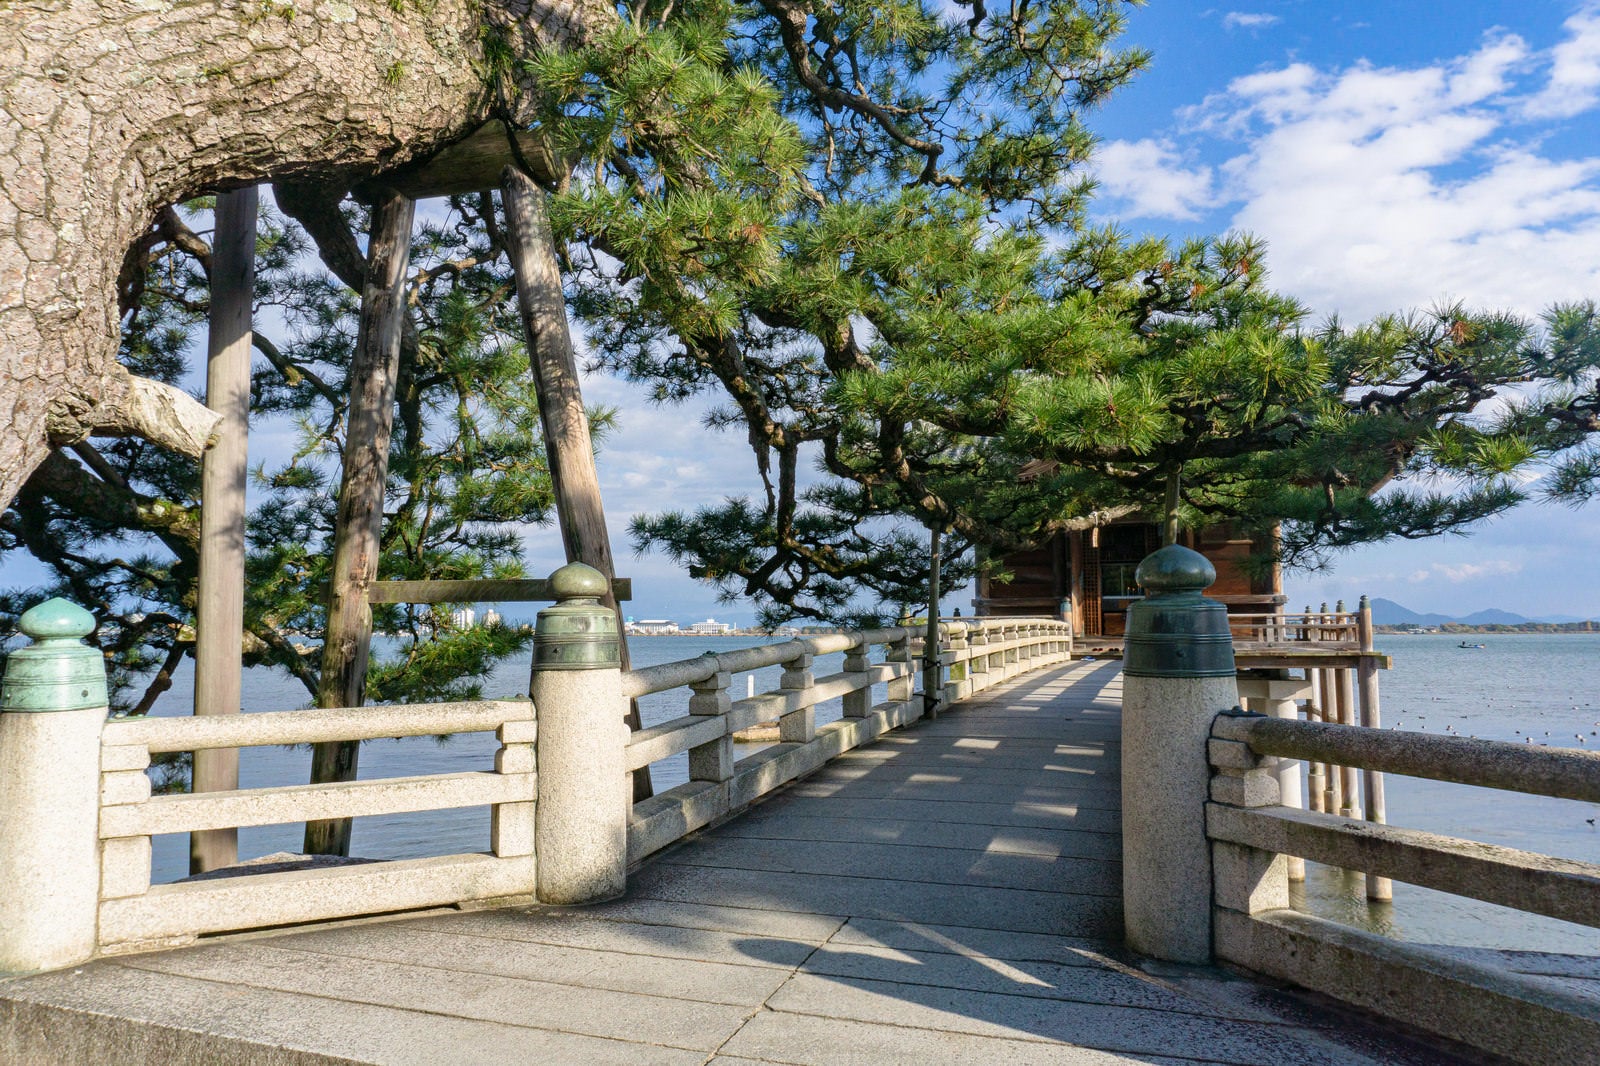 「琵琶湖岸の境内から浮御堂へ向かう石橋とその目の前に大ぶりの枝を伸ばす見事な松の木」の写真